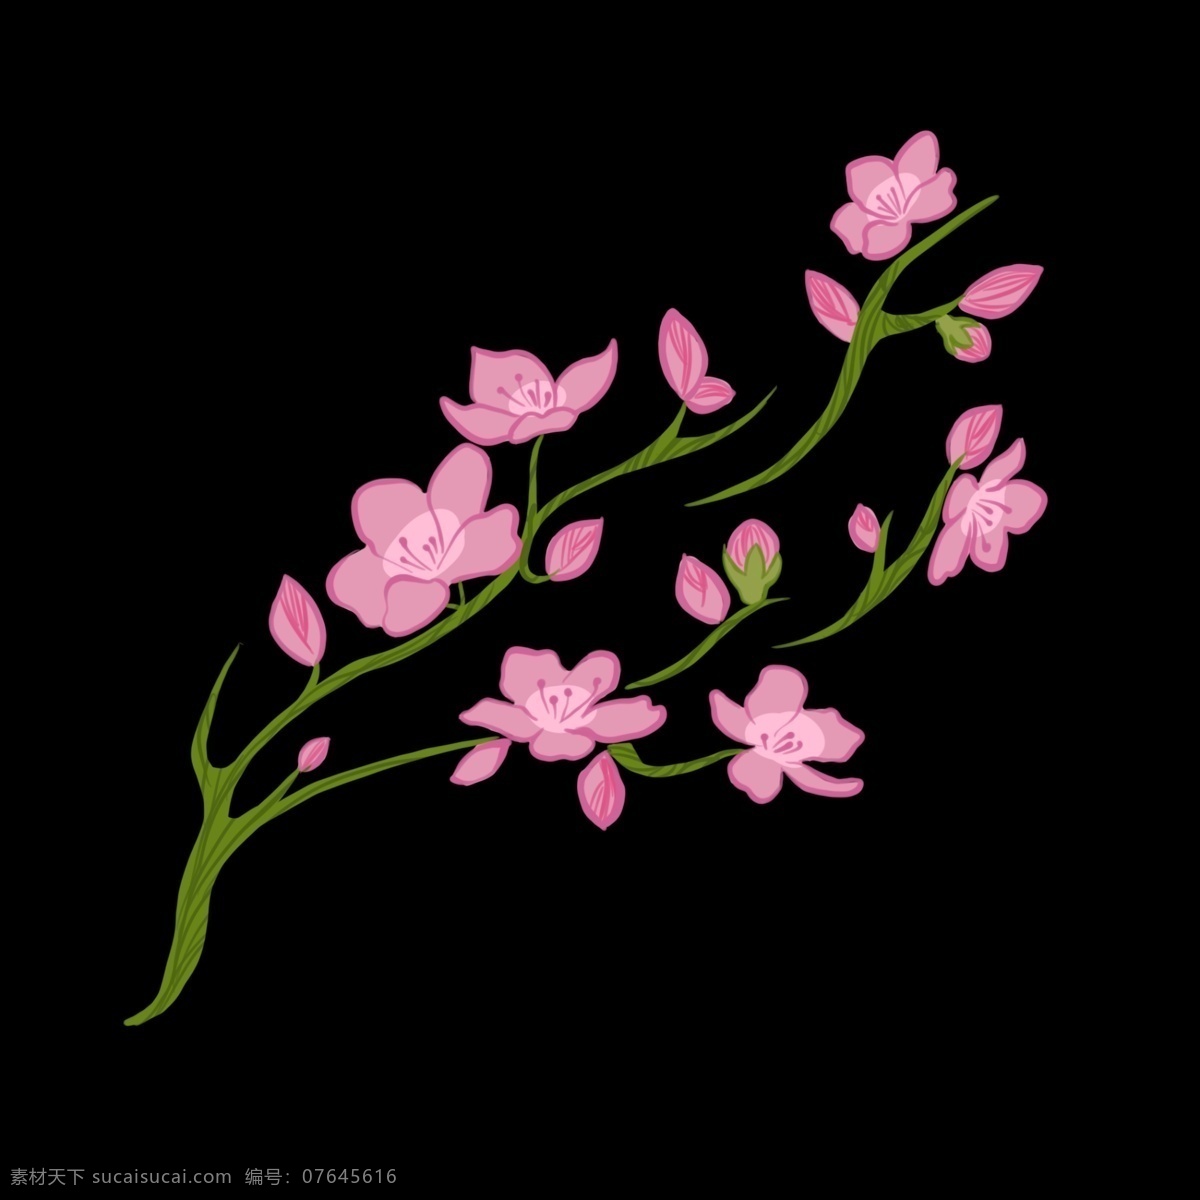 美丽 樱花 卡通 插画 美丽的樱花 卡通插画 植物插画 樱花插画 樱花花朵 装饰樱花 绽放的樱花